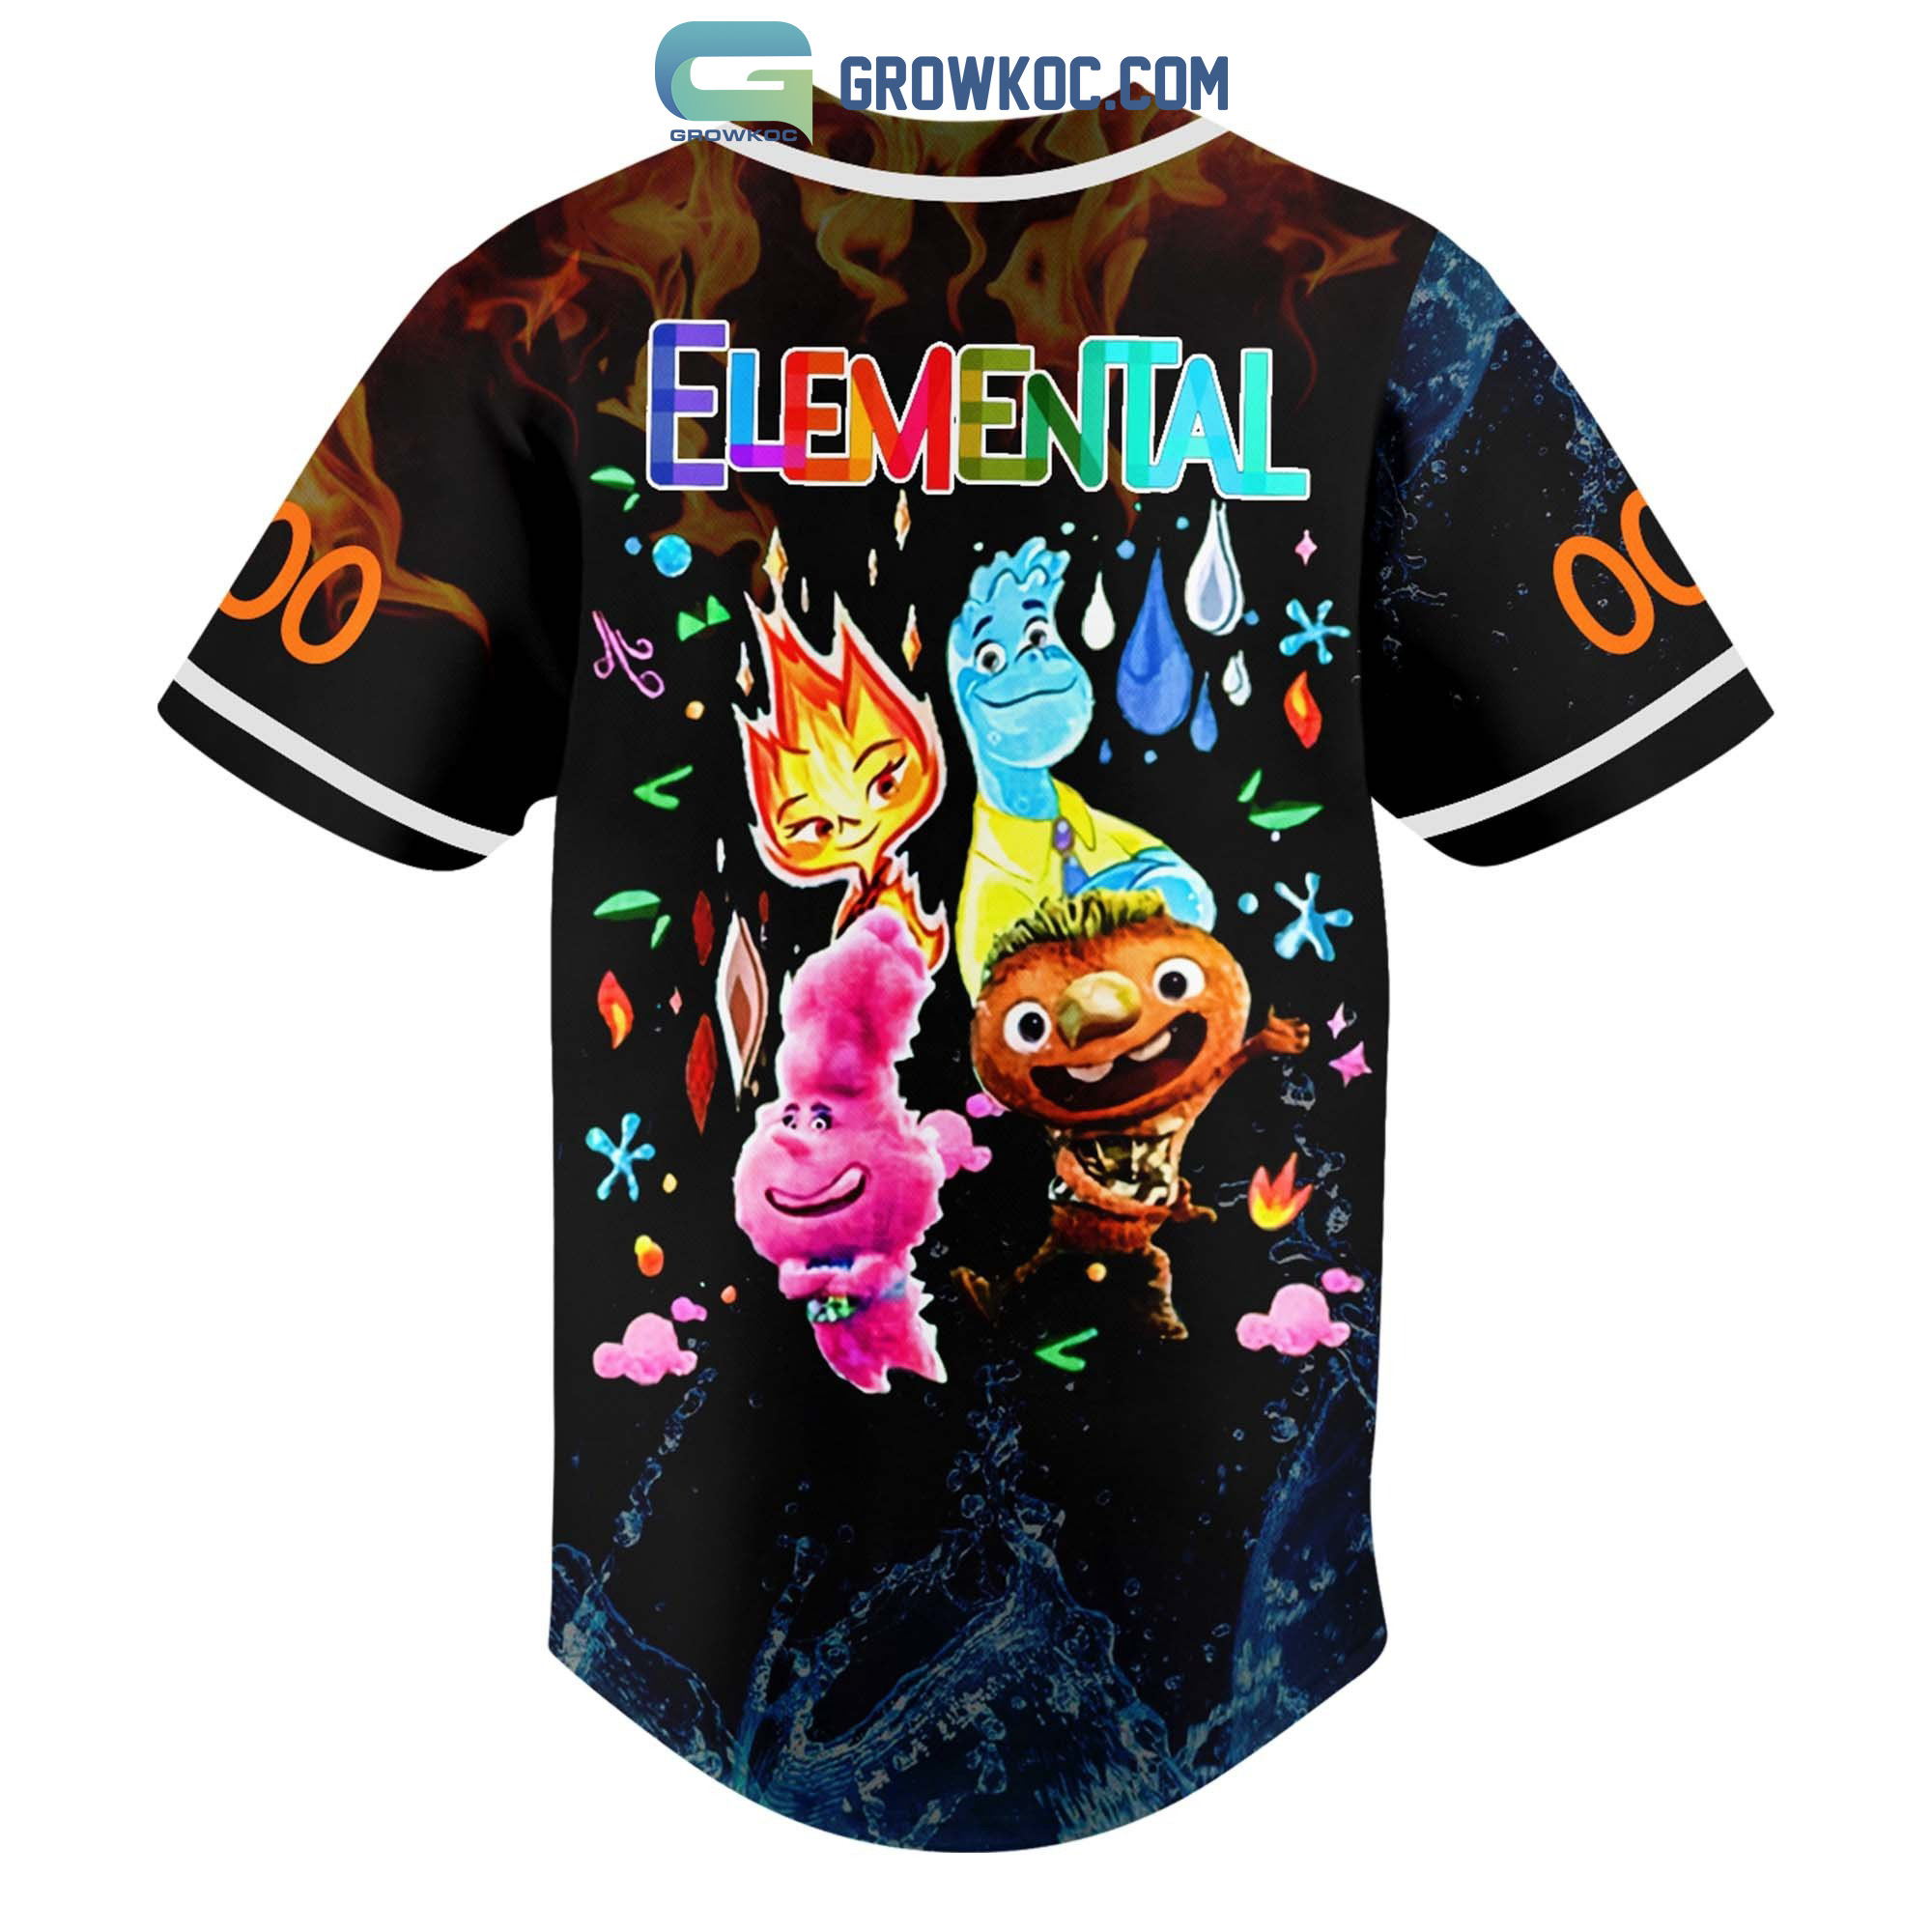 Elemental Walt Disney Personalized Baseball Jersey